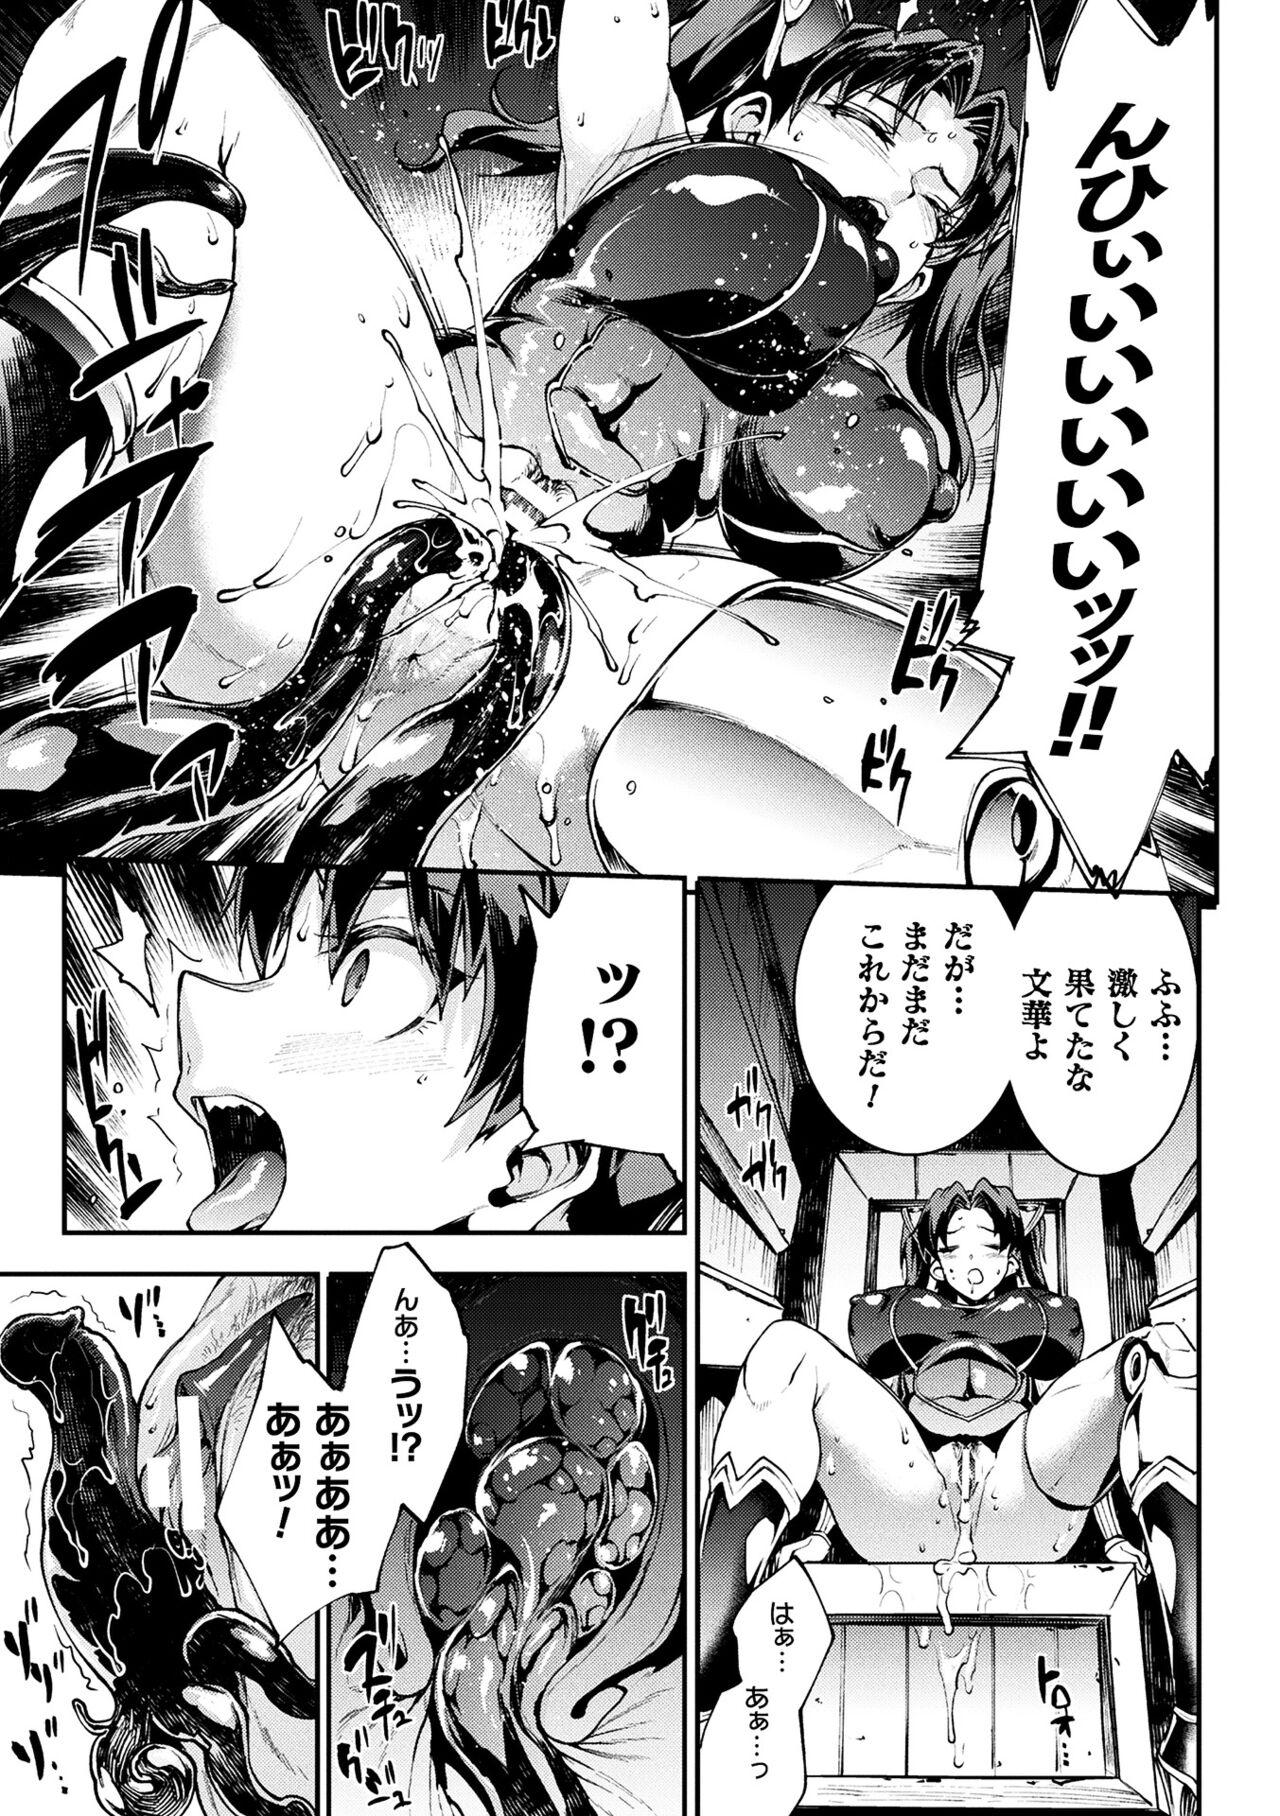 [Erect Sawaru] Raikou Shinki Igis Magia III -PANDRA saga 3rd ignition- 4 [Digital] 190